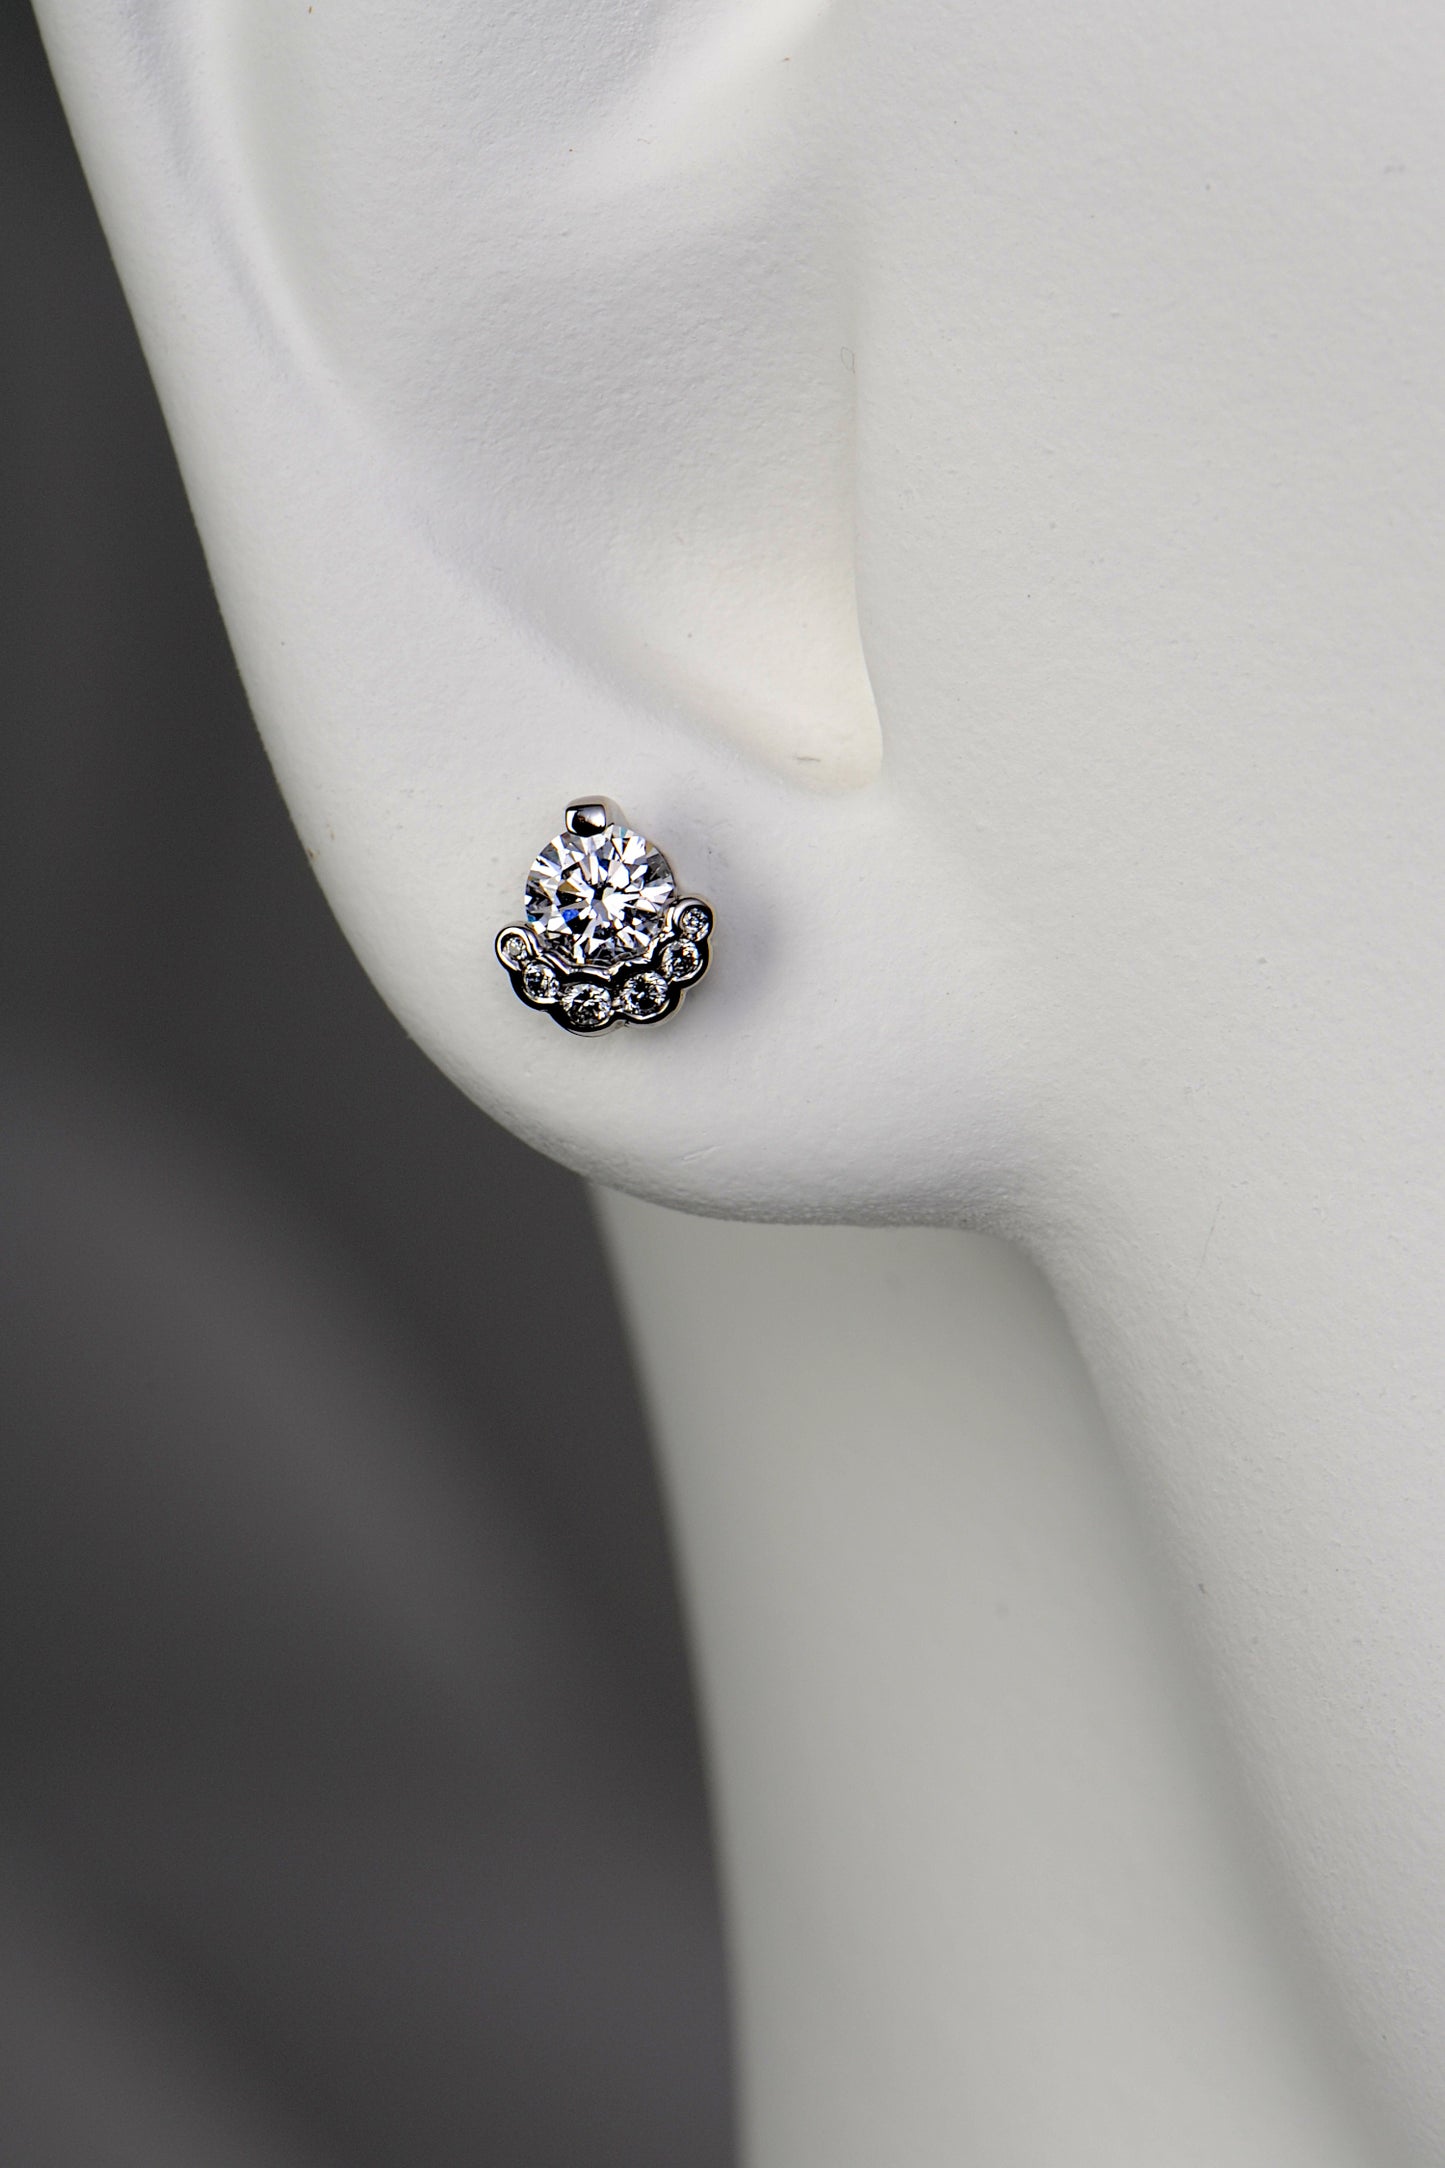 Fairypools diamond earrings